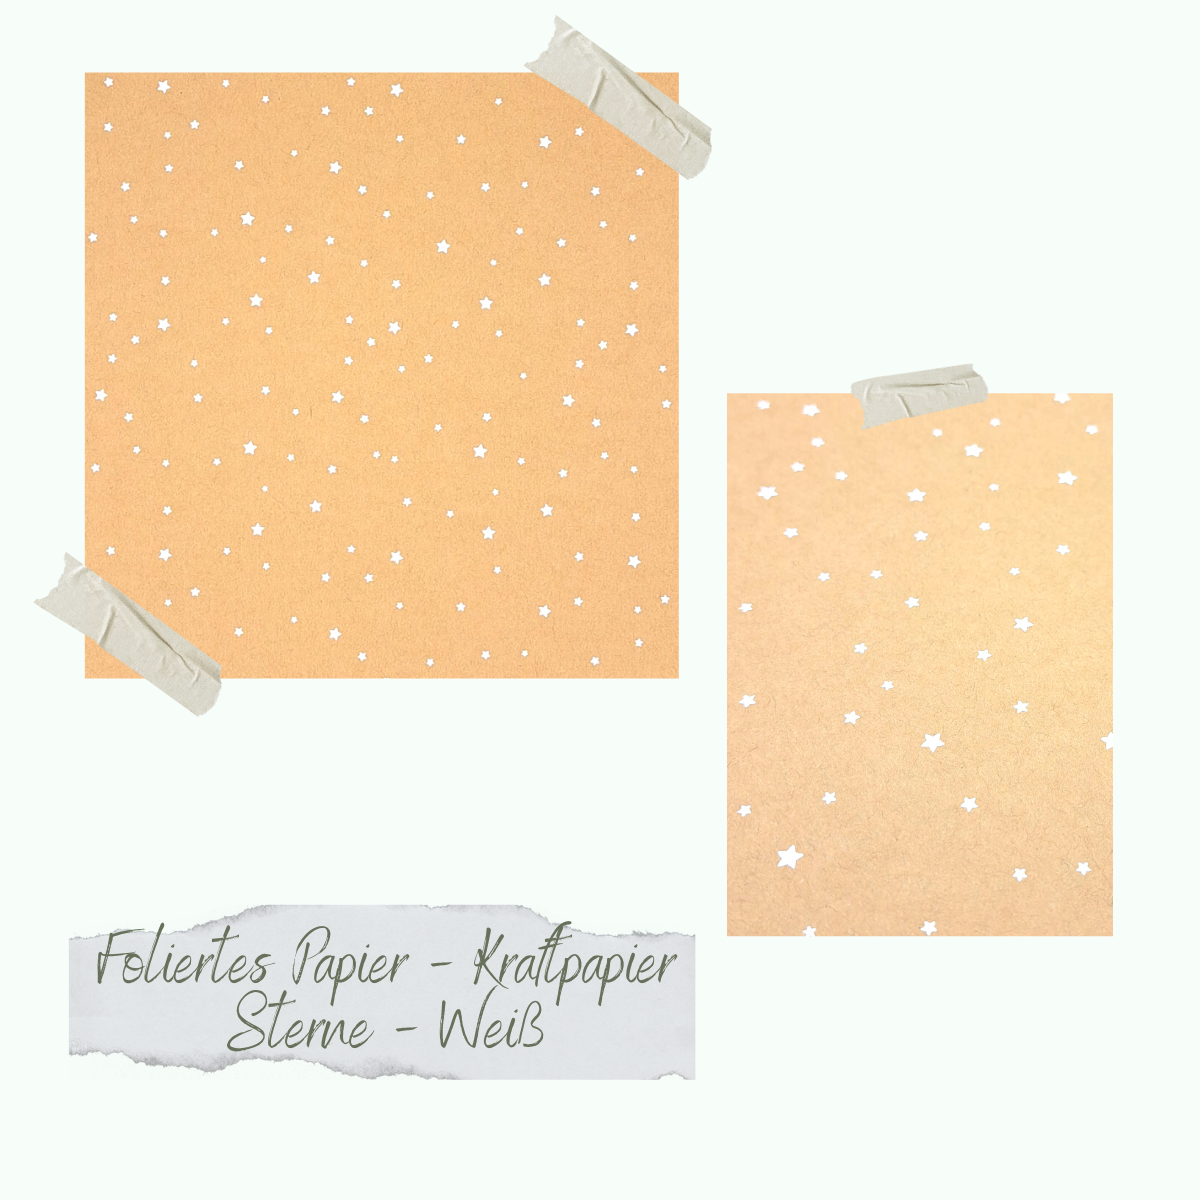 Foliertes Papier - Kraftpapier - Sterne - Weiß